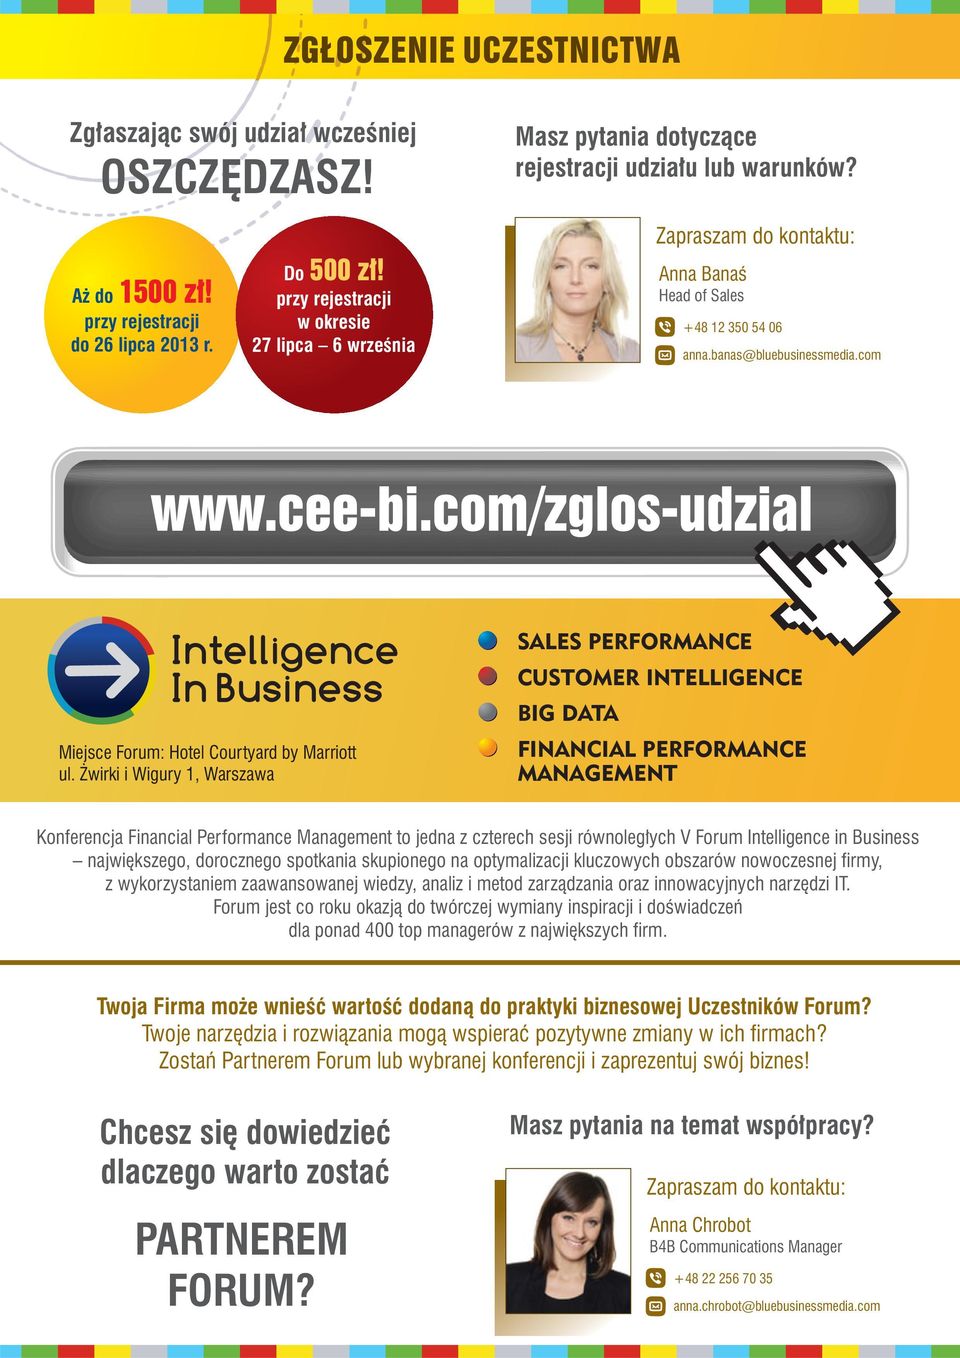 com/zglos-udzial Intelligence In Business Miejsce Forum: Hotel Courtyard by Marriott ul.